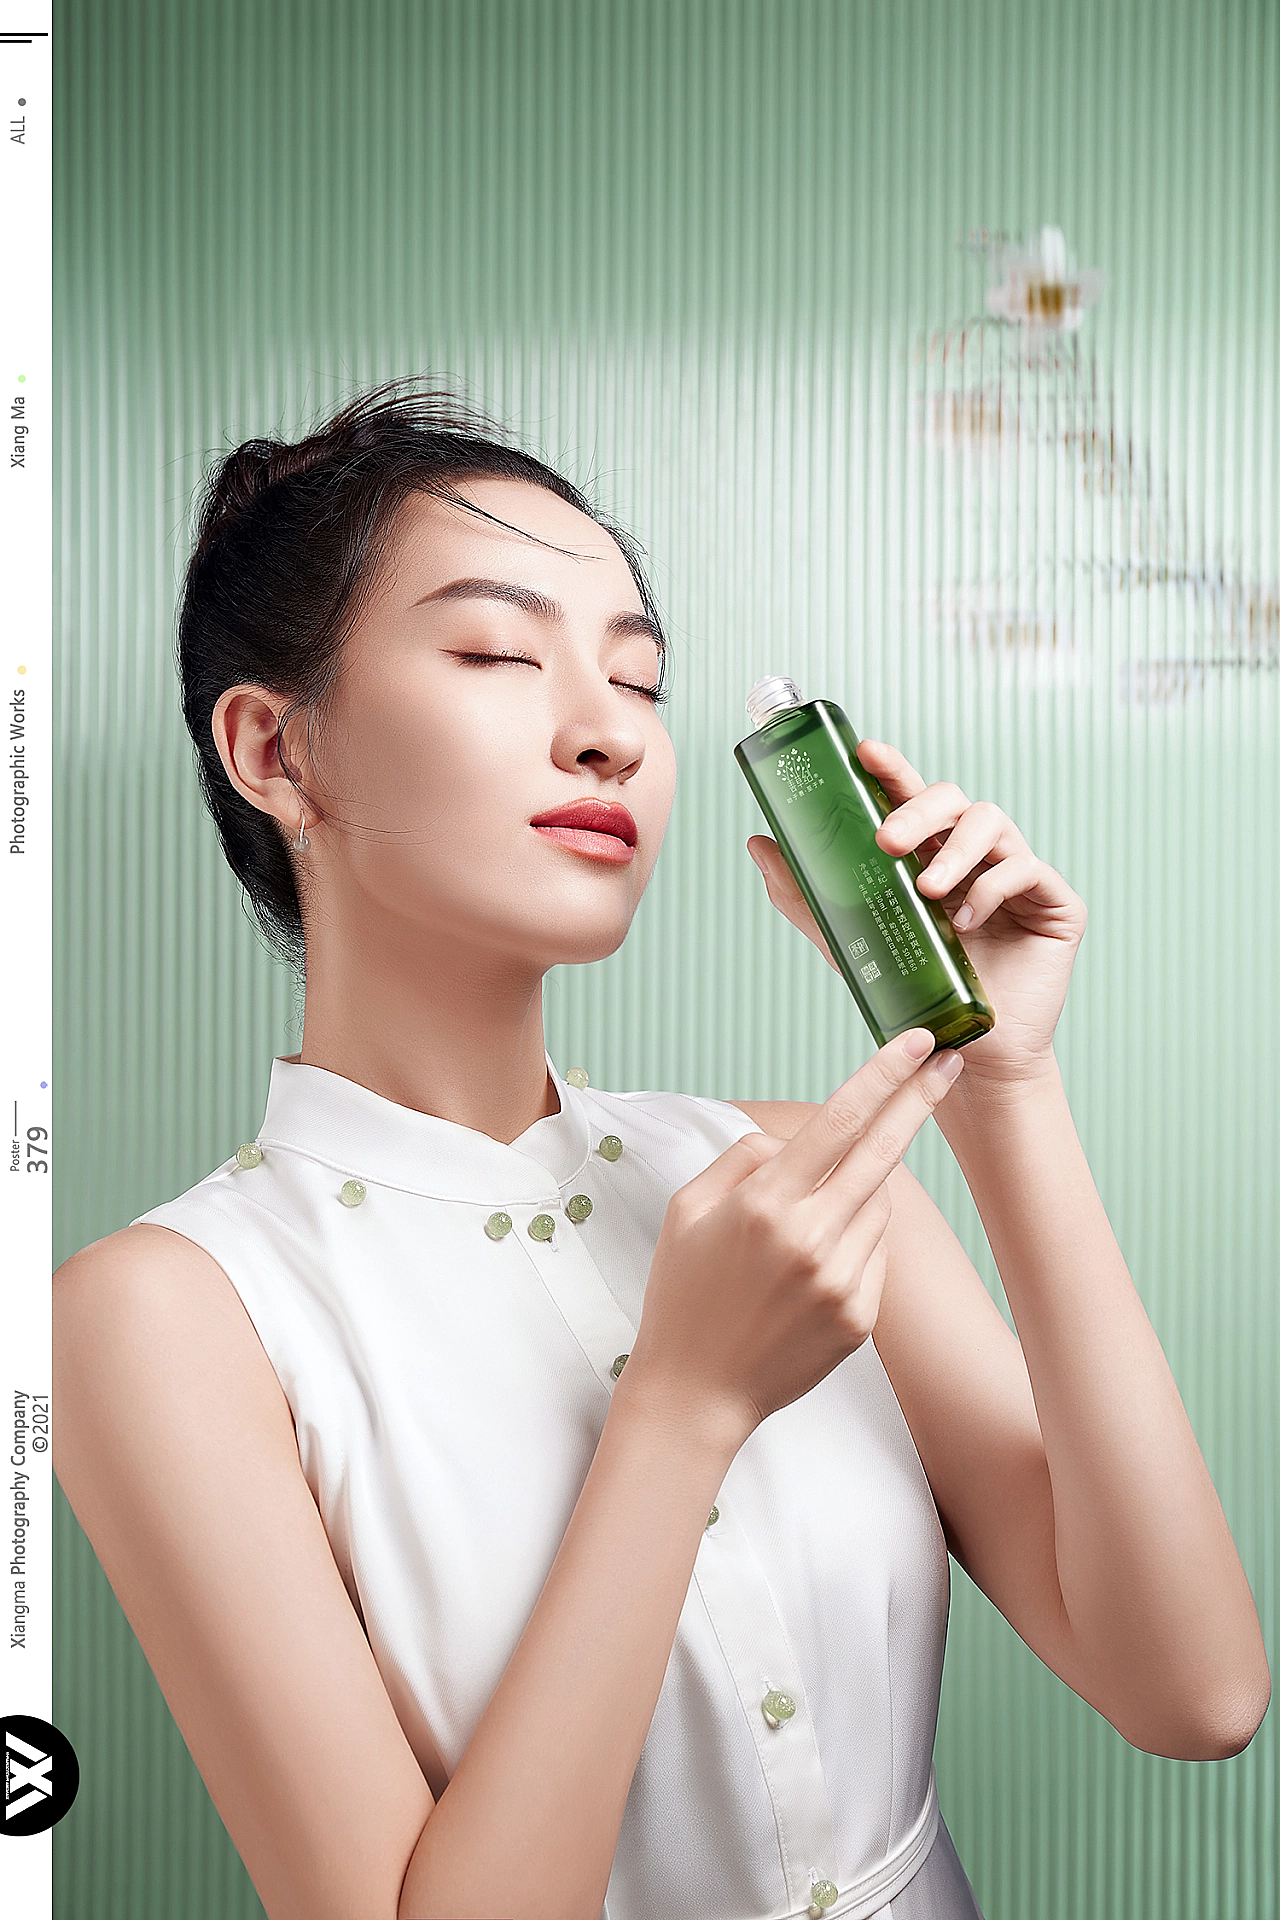 天然茶树油滴精油护肤品美肤产品海报图片下载 - 觅知网